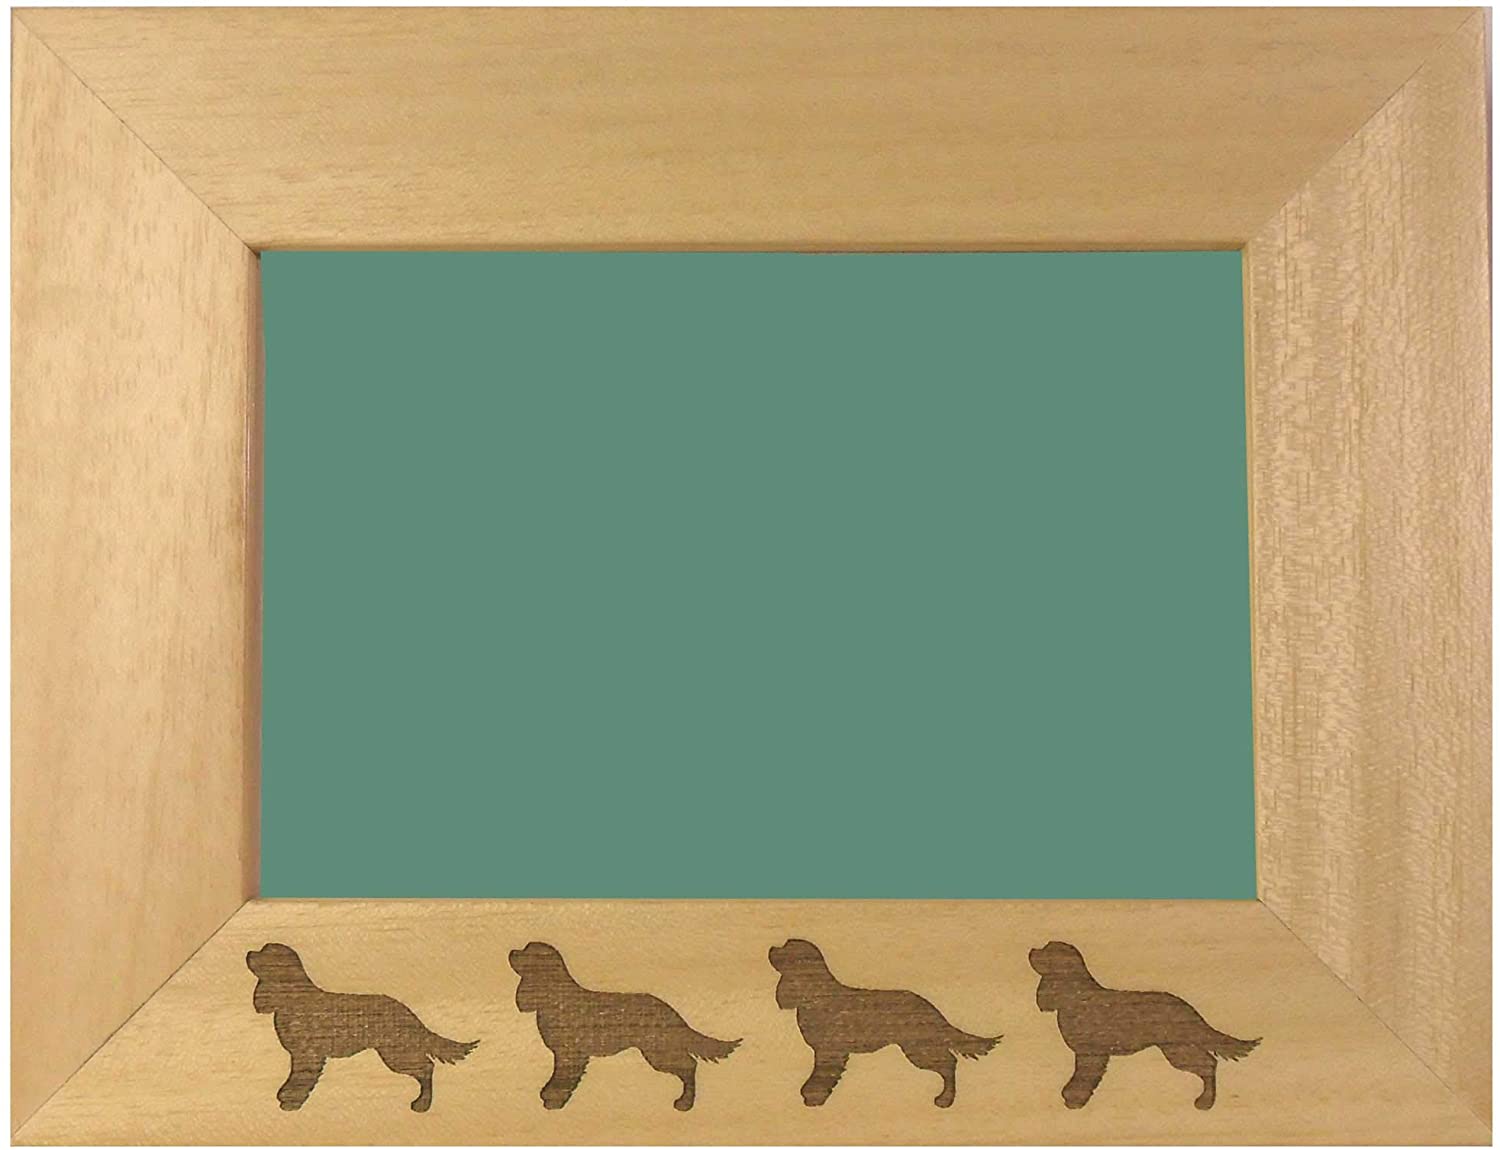  JTS-Designs Cavalier King Charles Spaniel Marco de fotos grabado – regalo para los amantes de los perros – para paisajes de 6 x 4 pulgadas imágenes 